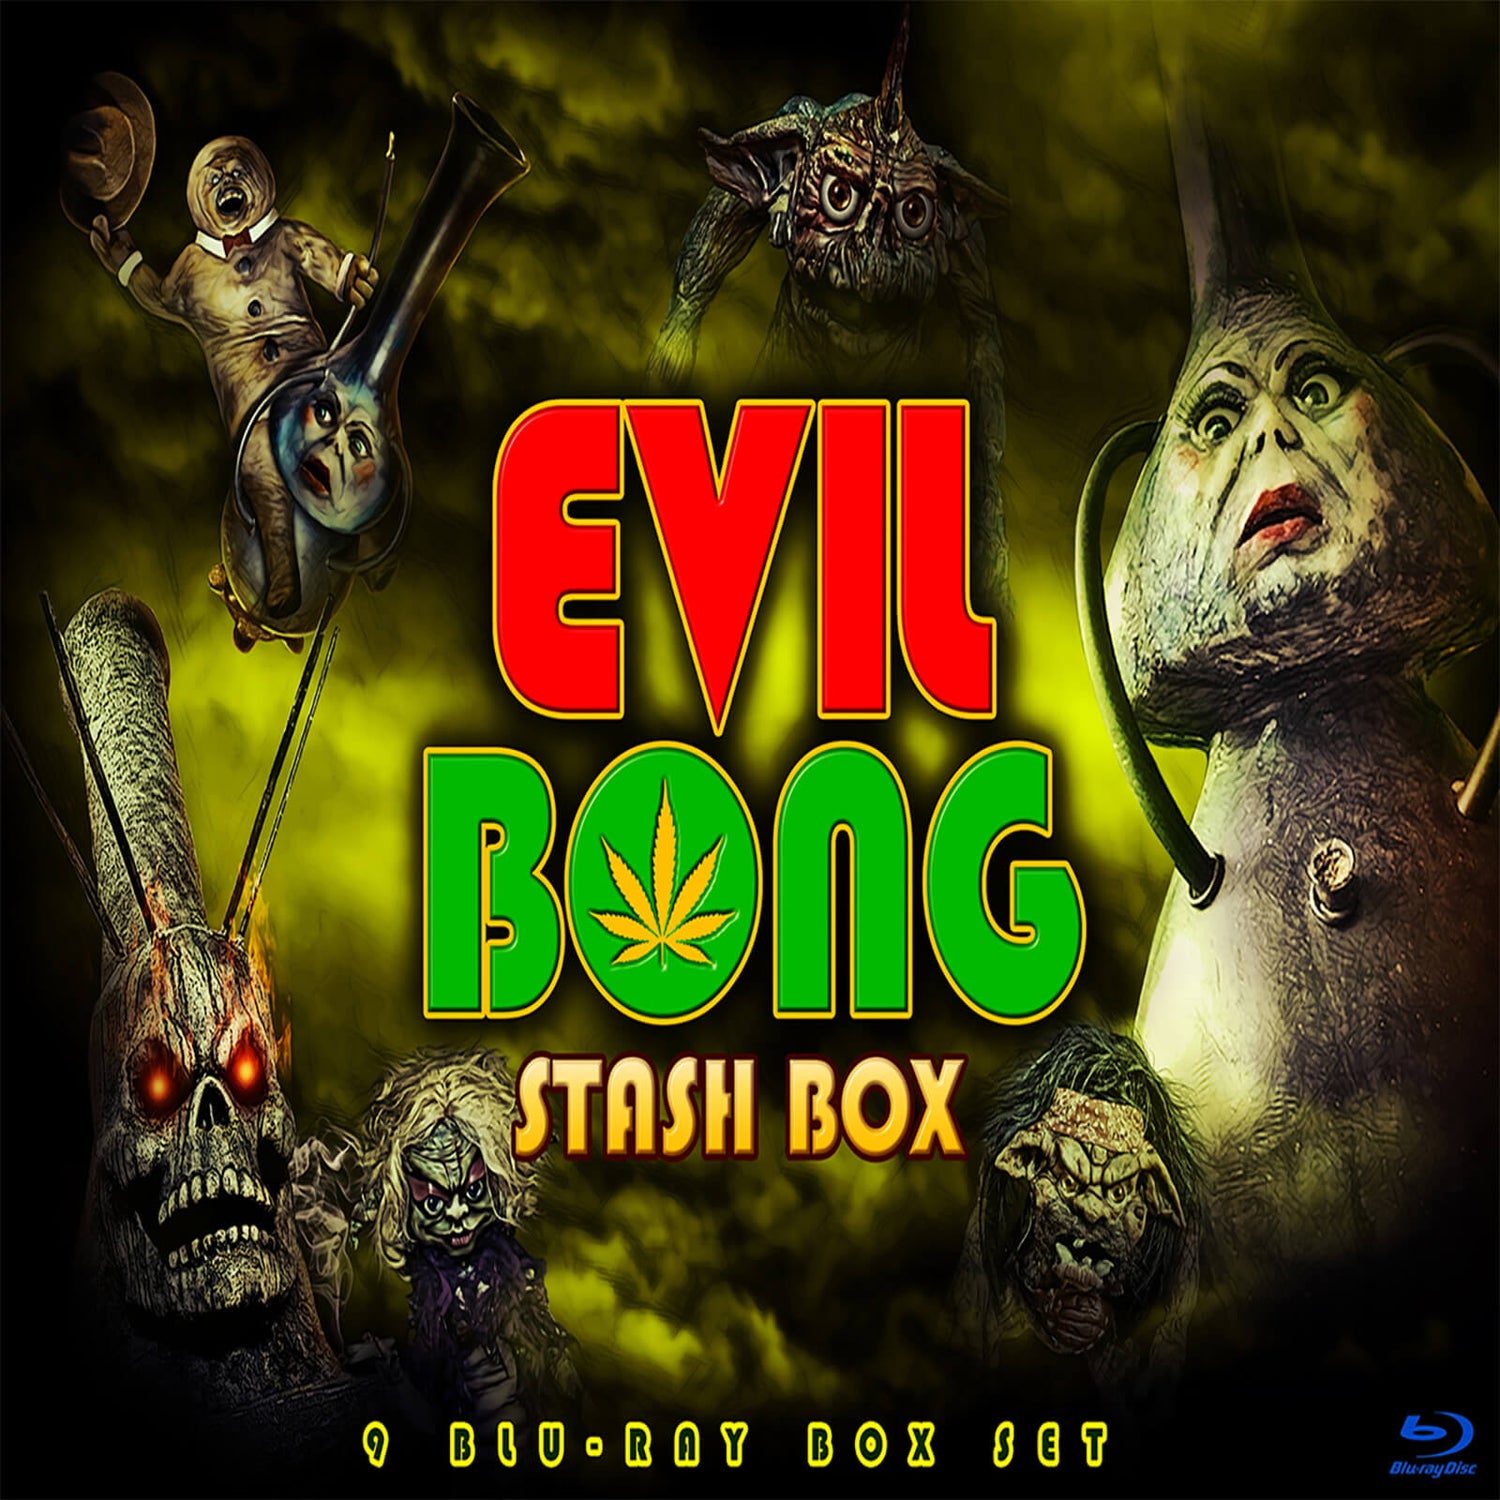 The Evil Bong Stash Box